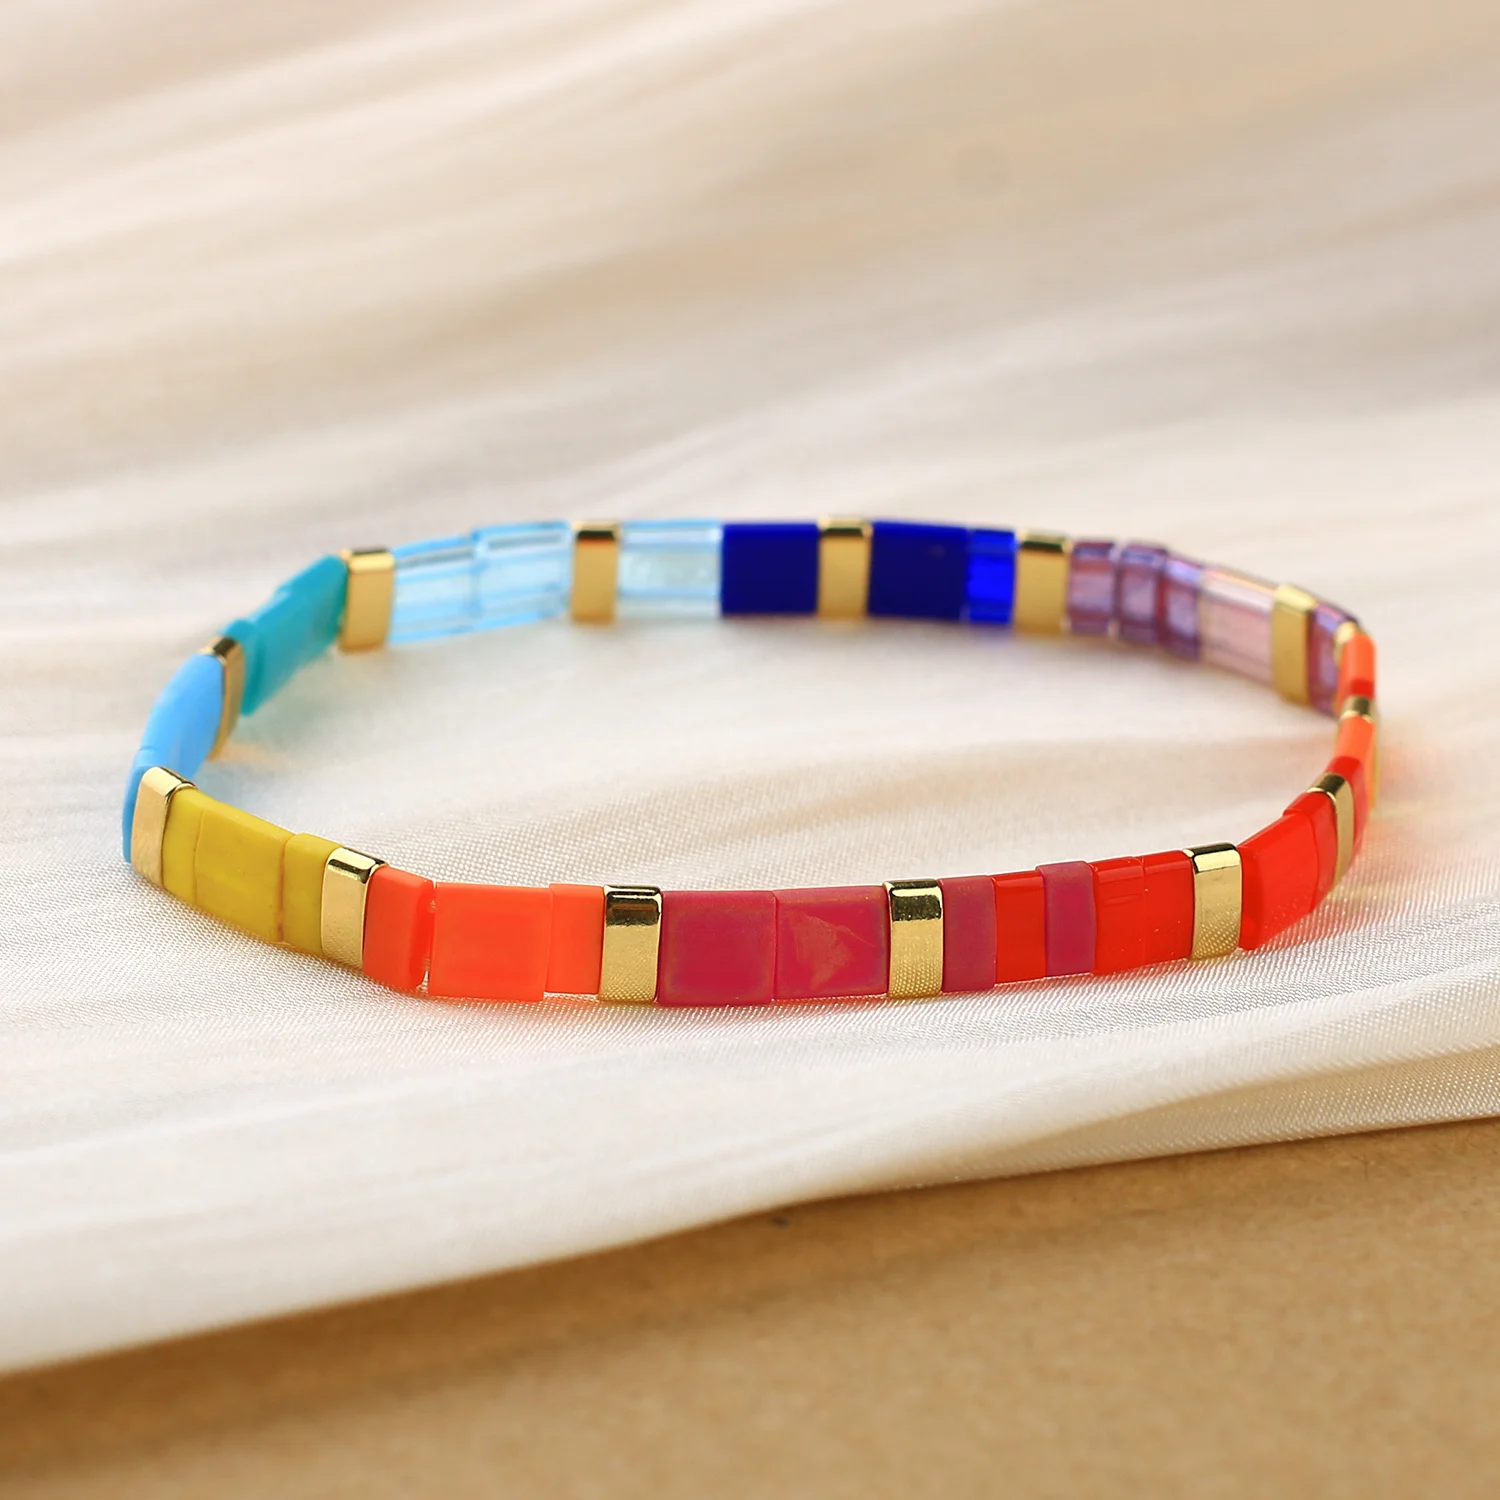 C. QUAN CHI Красочные эластичные браслеты из бисера Tila, модные браслеты в стиле бохо, женский наращиваемый браслет Изображение 1